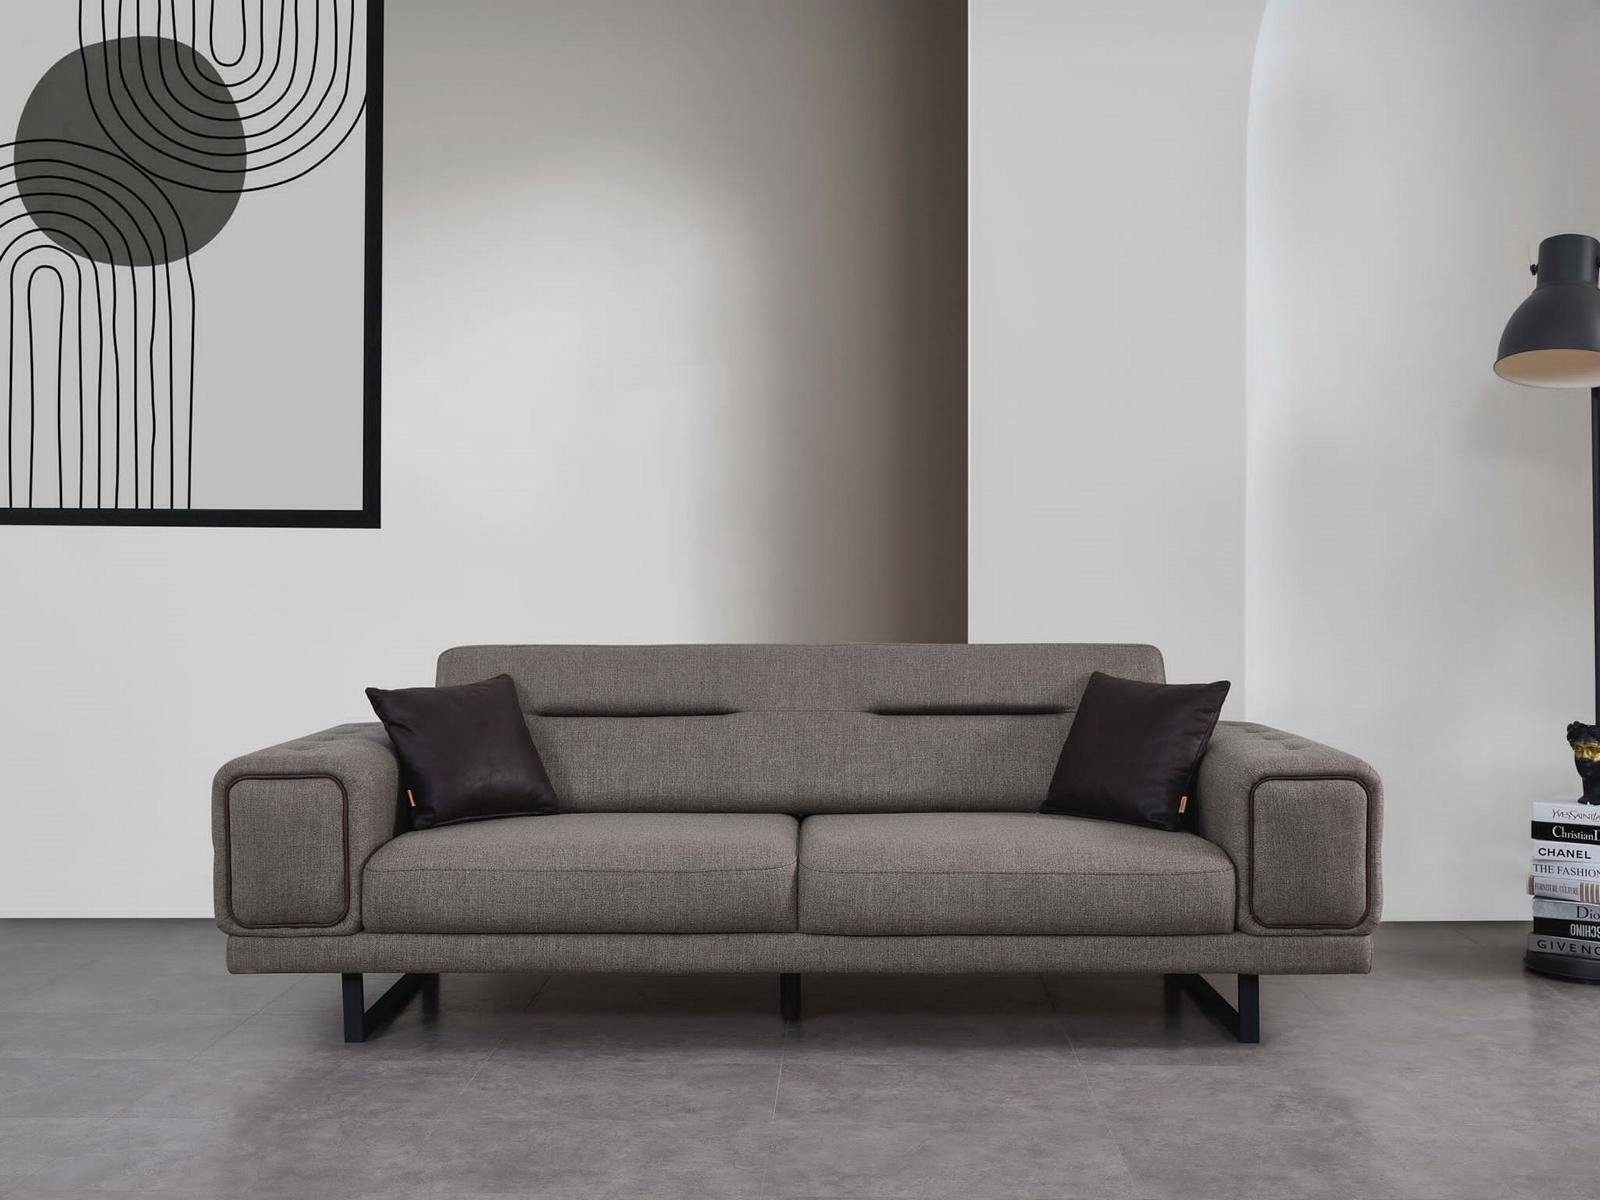 Dreisitzer Modern JVmoebel Wohnzimmer Sofa Neu Design, Made Luxus Europa Sofas in Einrichtung Sofa 1 Teile,